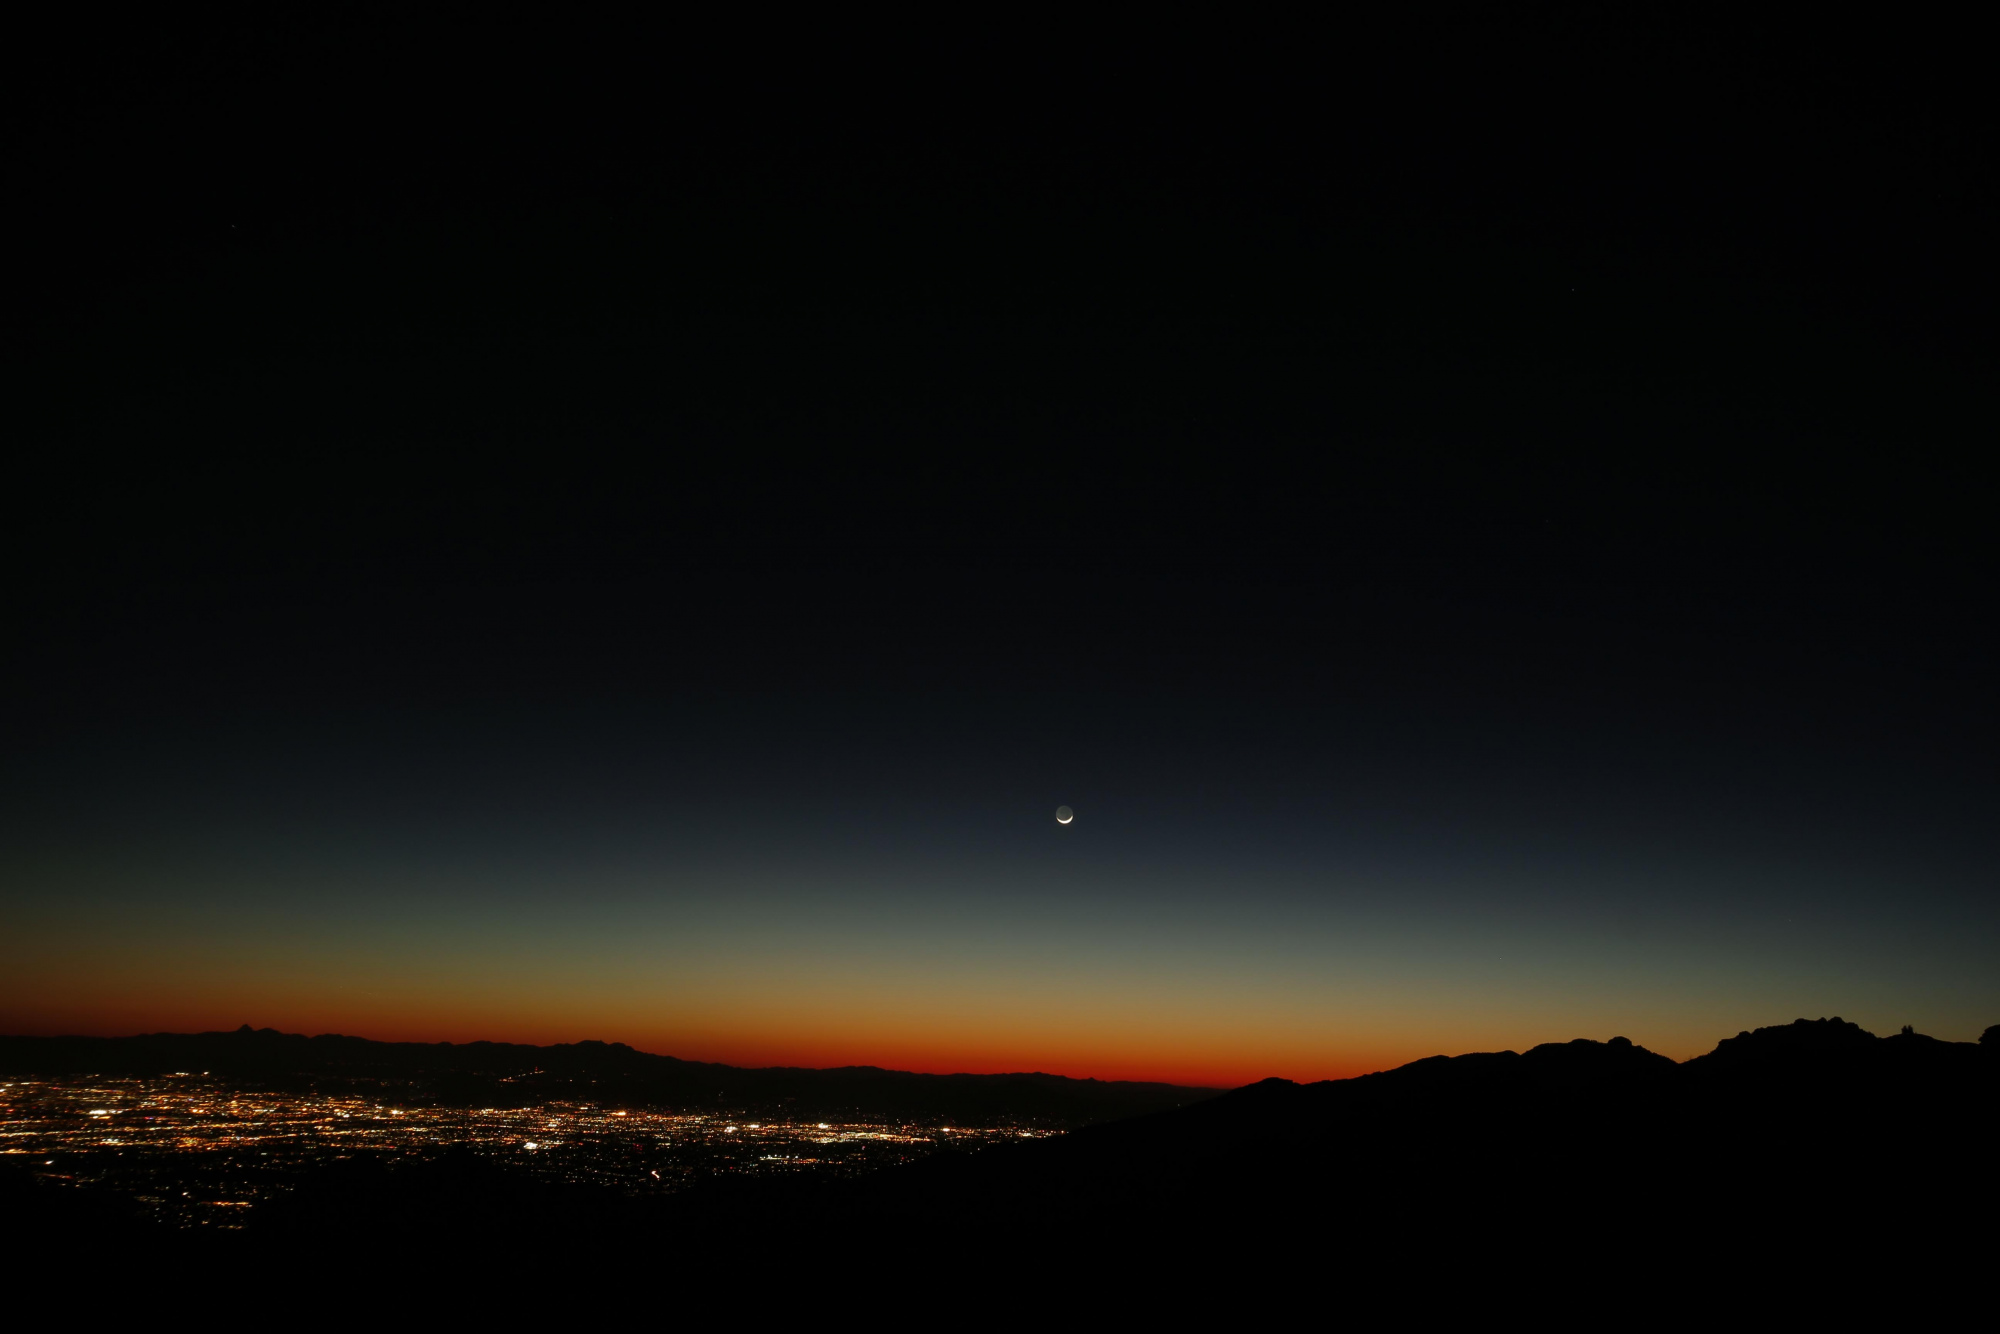 Tucson et Lune cendrée 5733 send.jpg